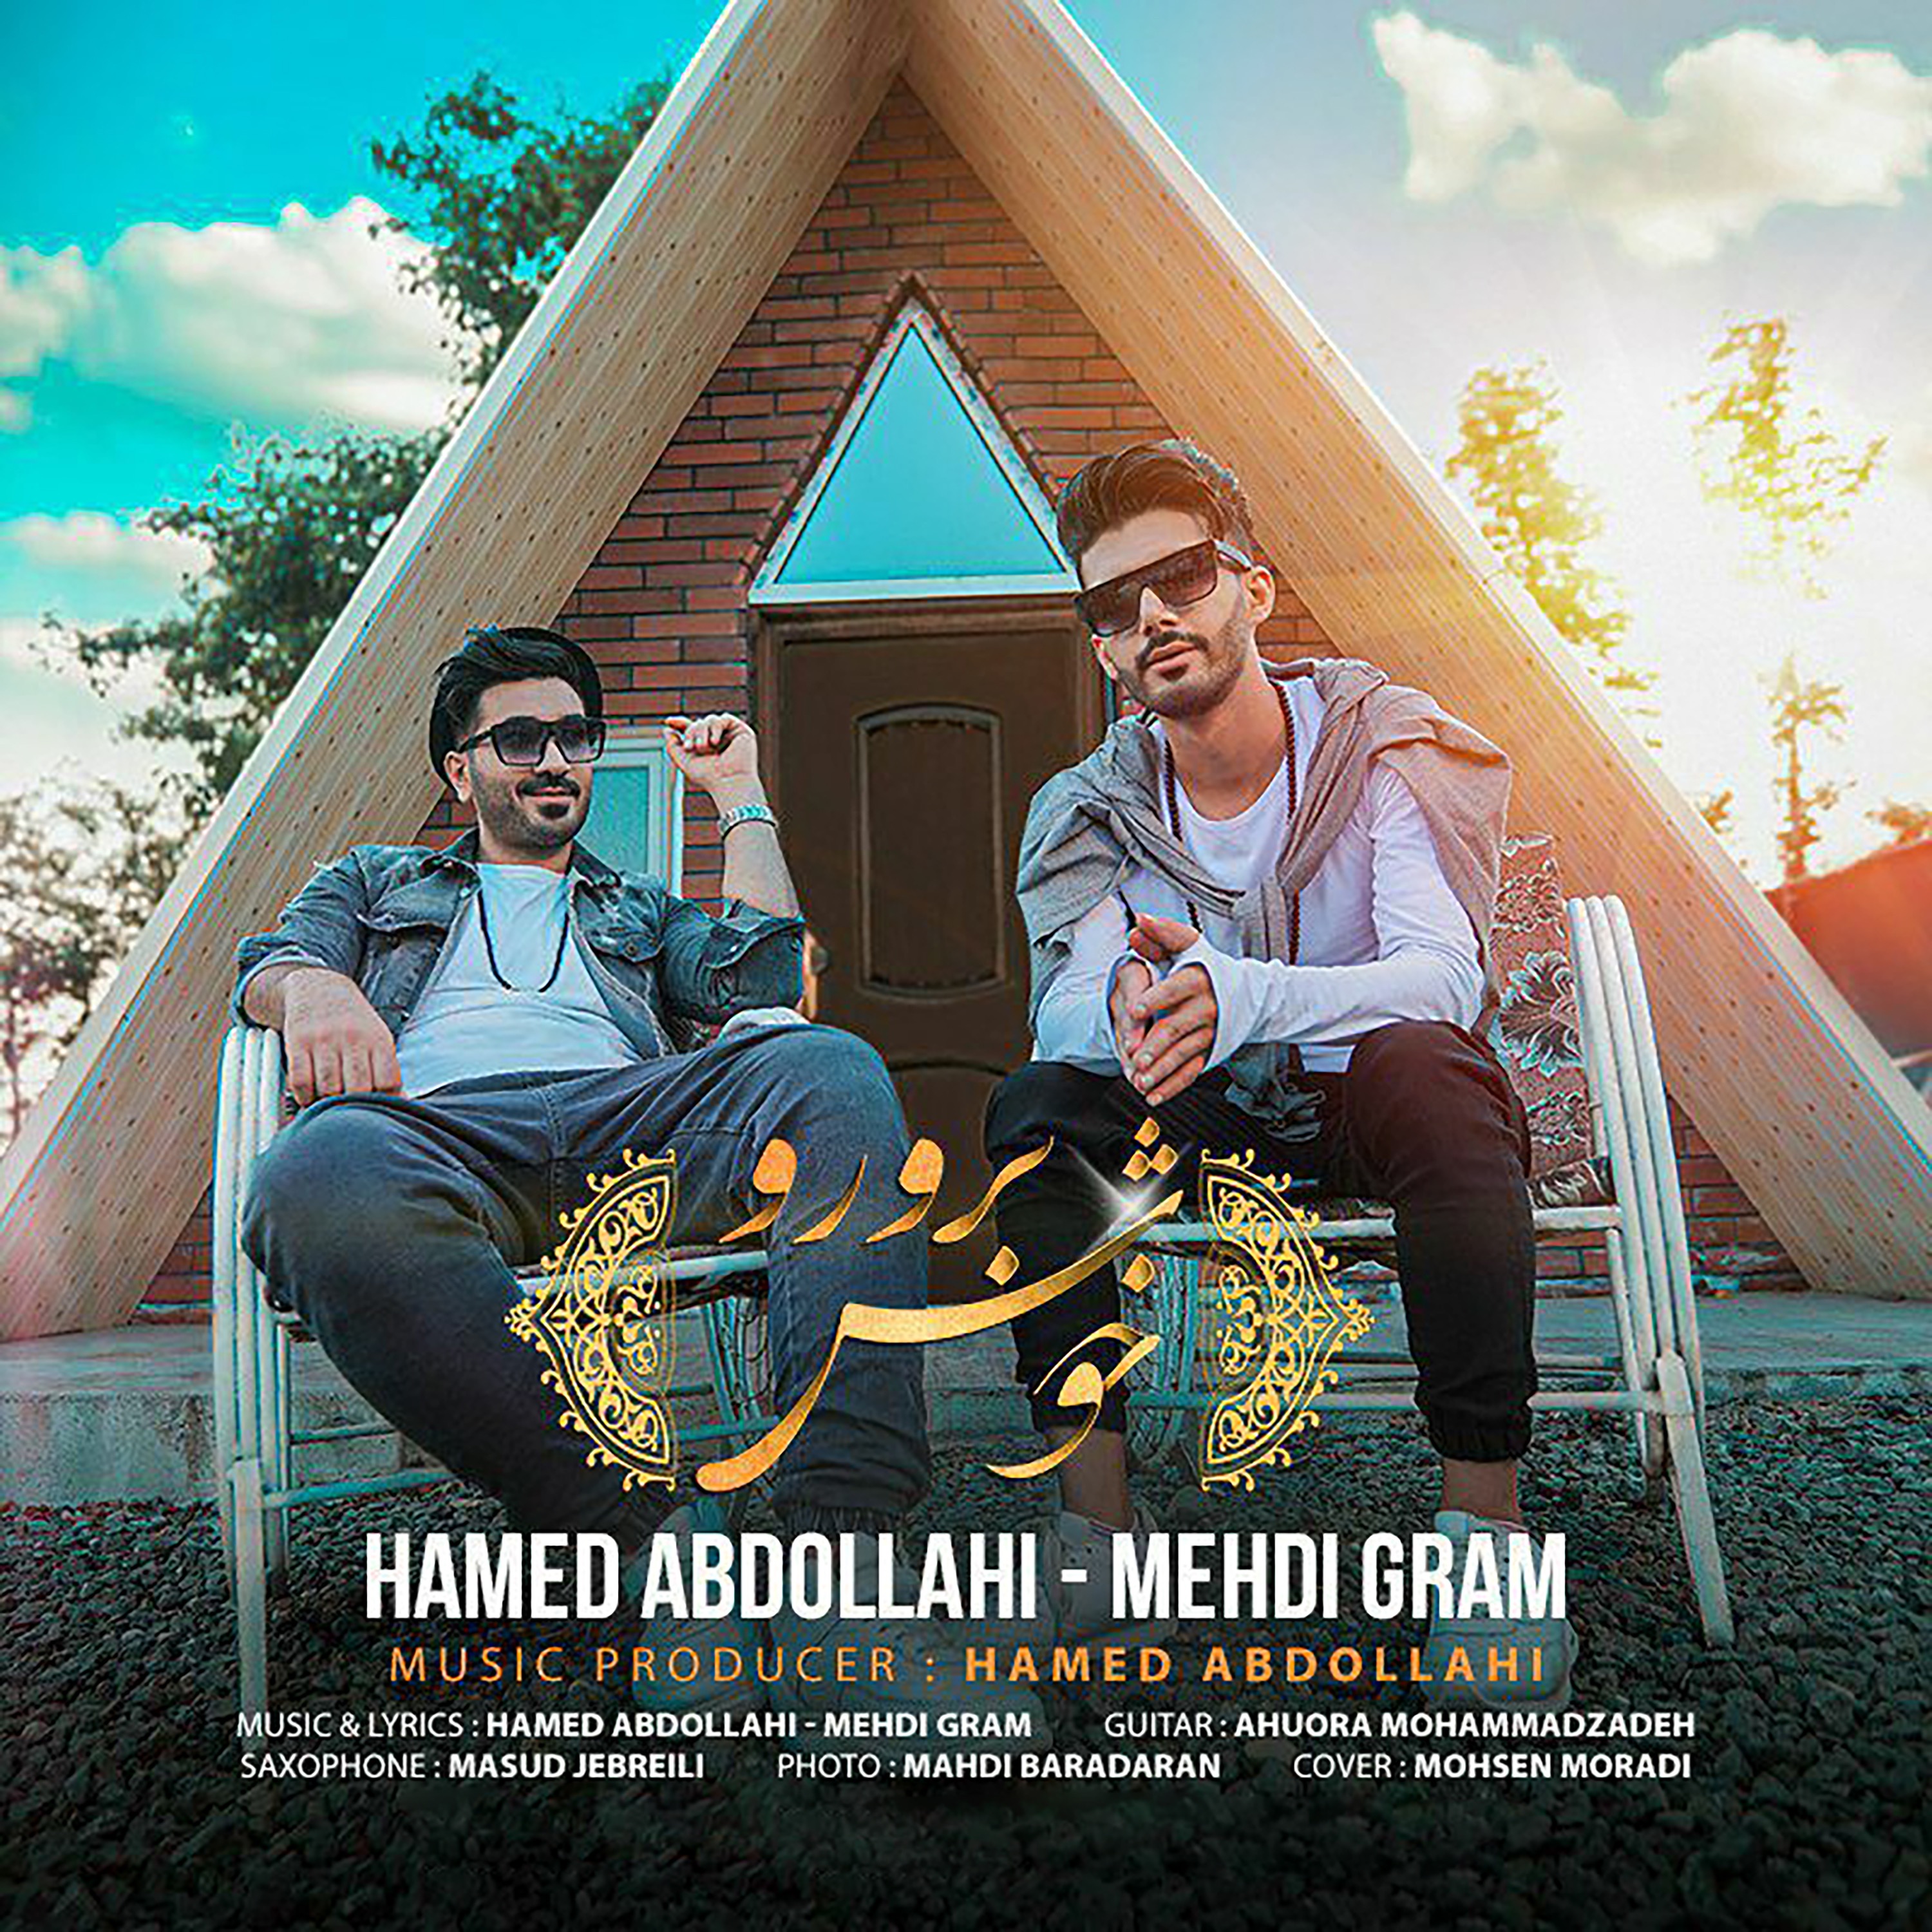  دانلود آهنگ جدید حامد عبداللهی و مهدی گرام - خوش بر و رو | Download New Music By Hamed Abdollahi & Mehdi Gram - Khosh Baroro